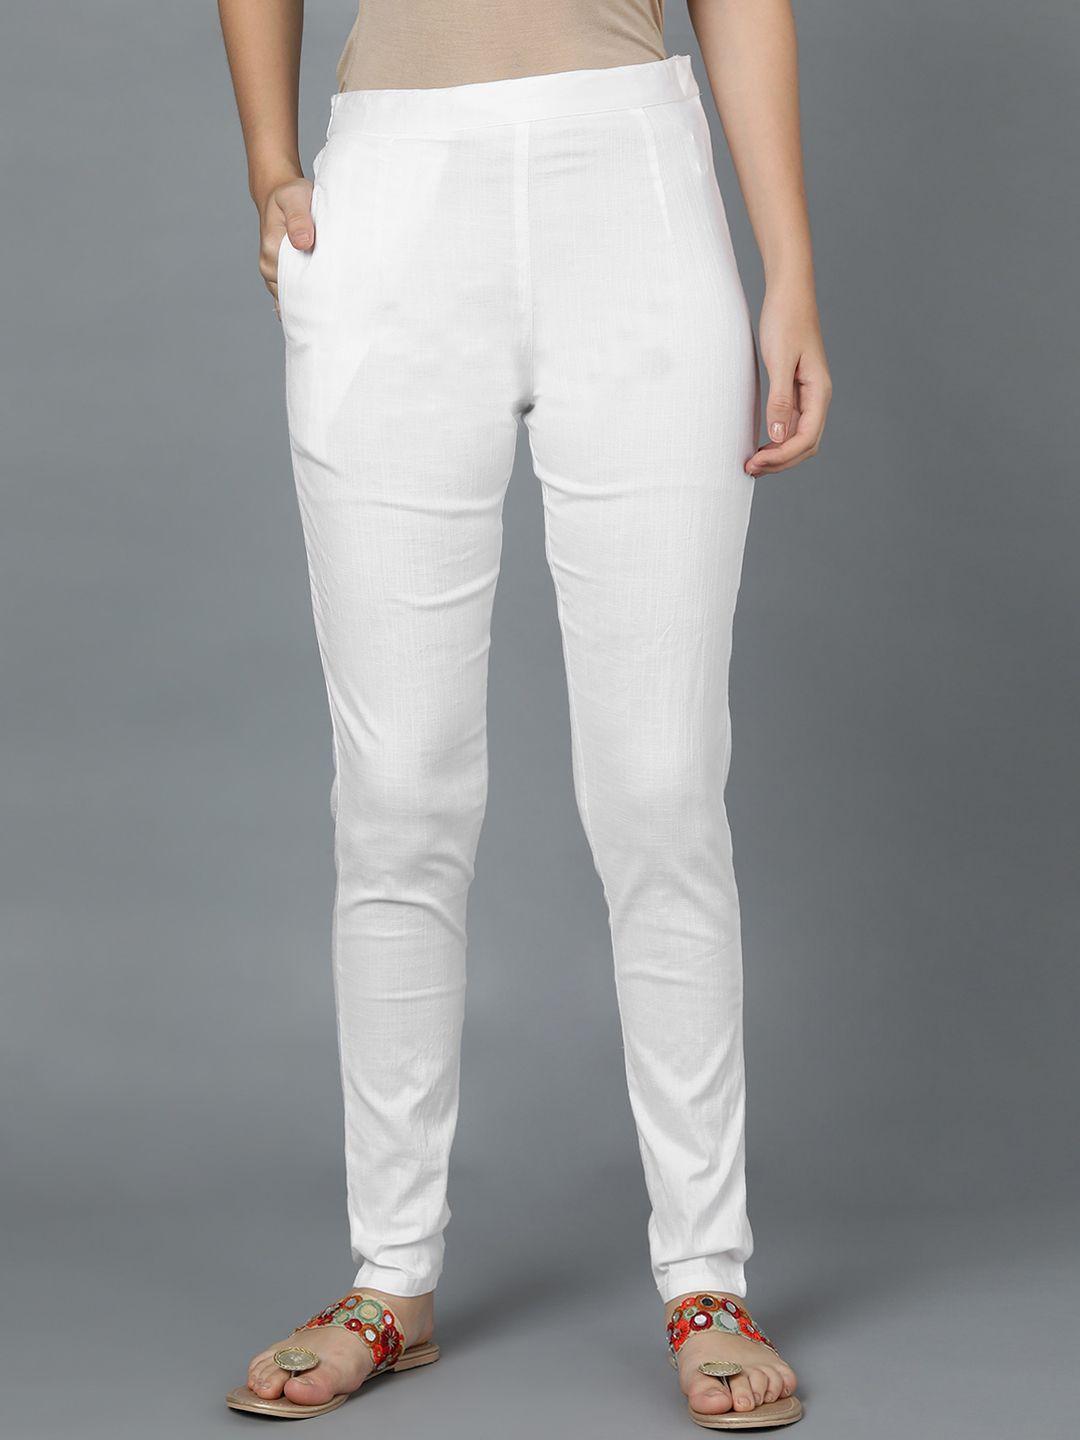 bani women white trousers